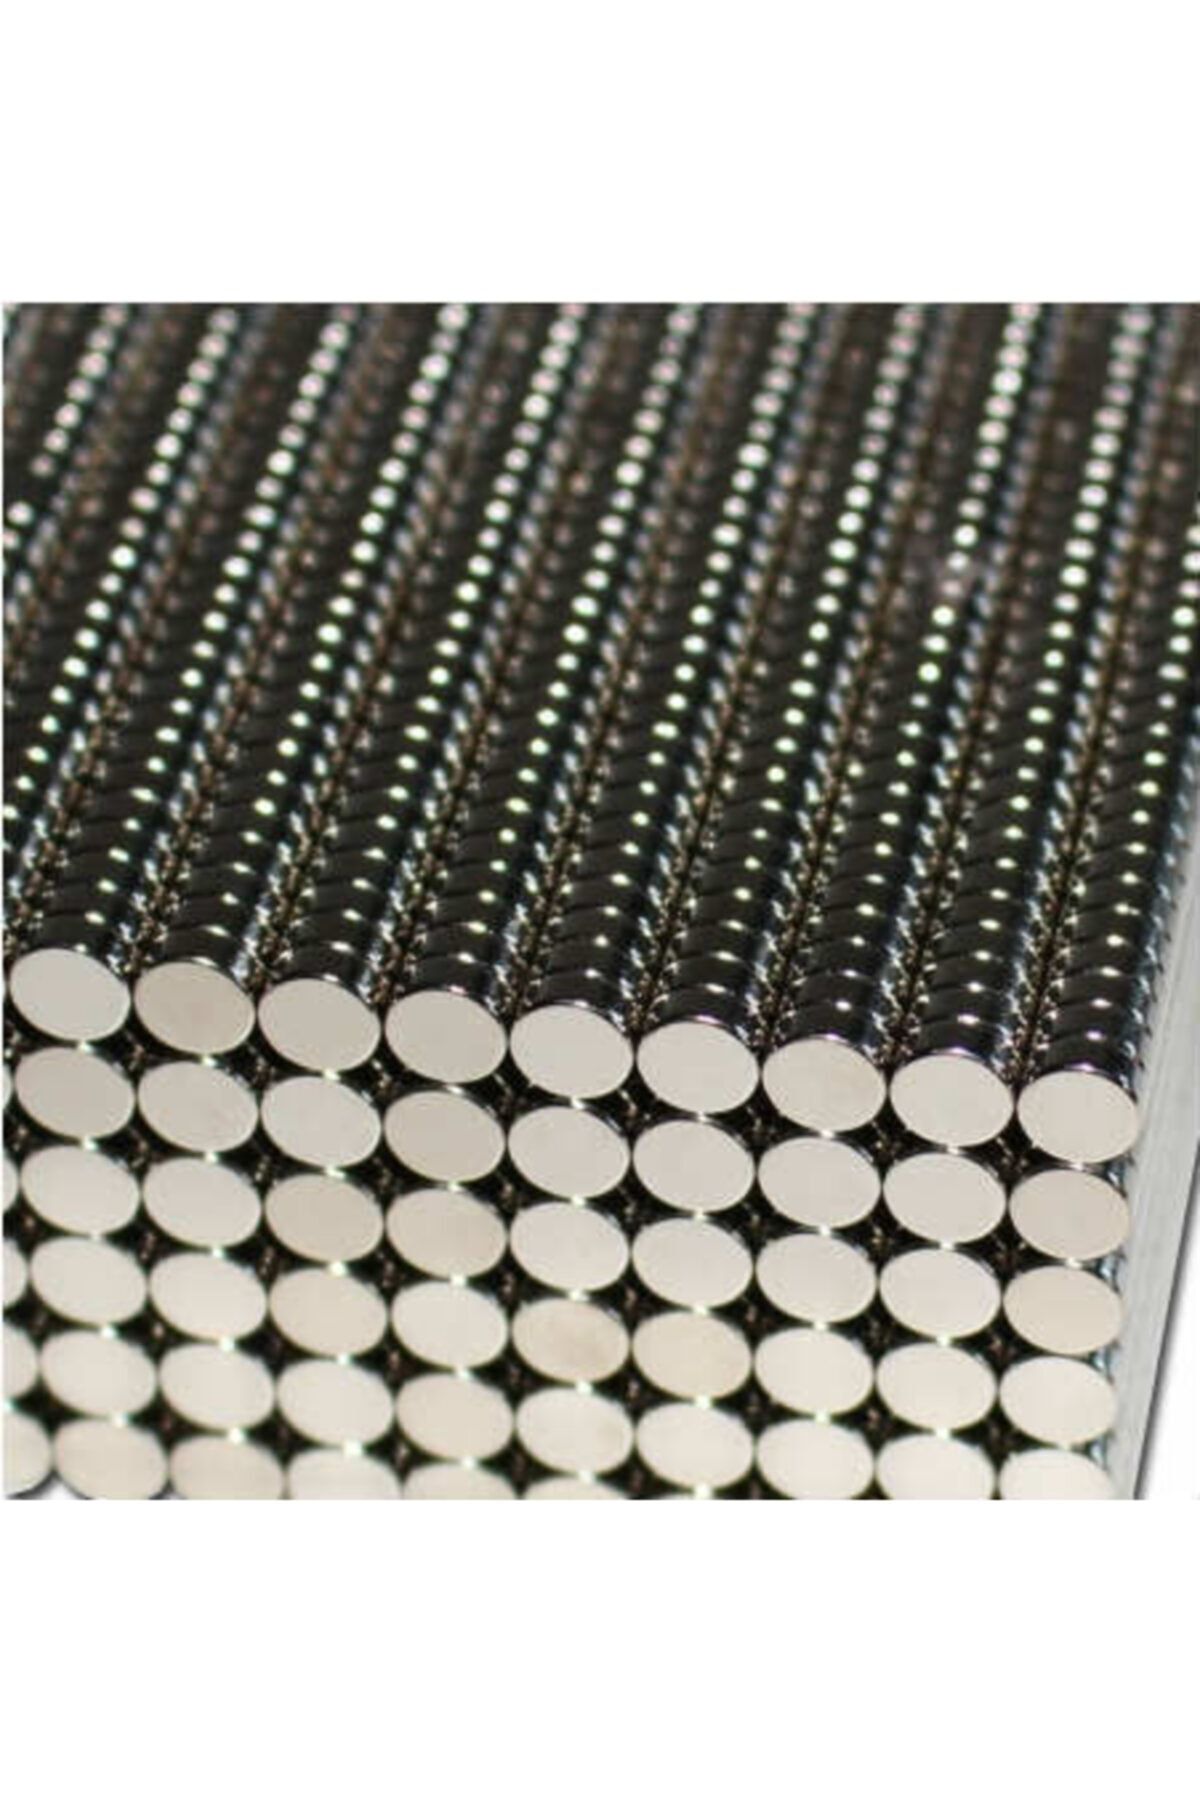 Dünya Magnet 50 Adet Çap 5mm X Kalınlık 1mm Güçlü Yuvarlak Neodyum Mıknatıs